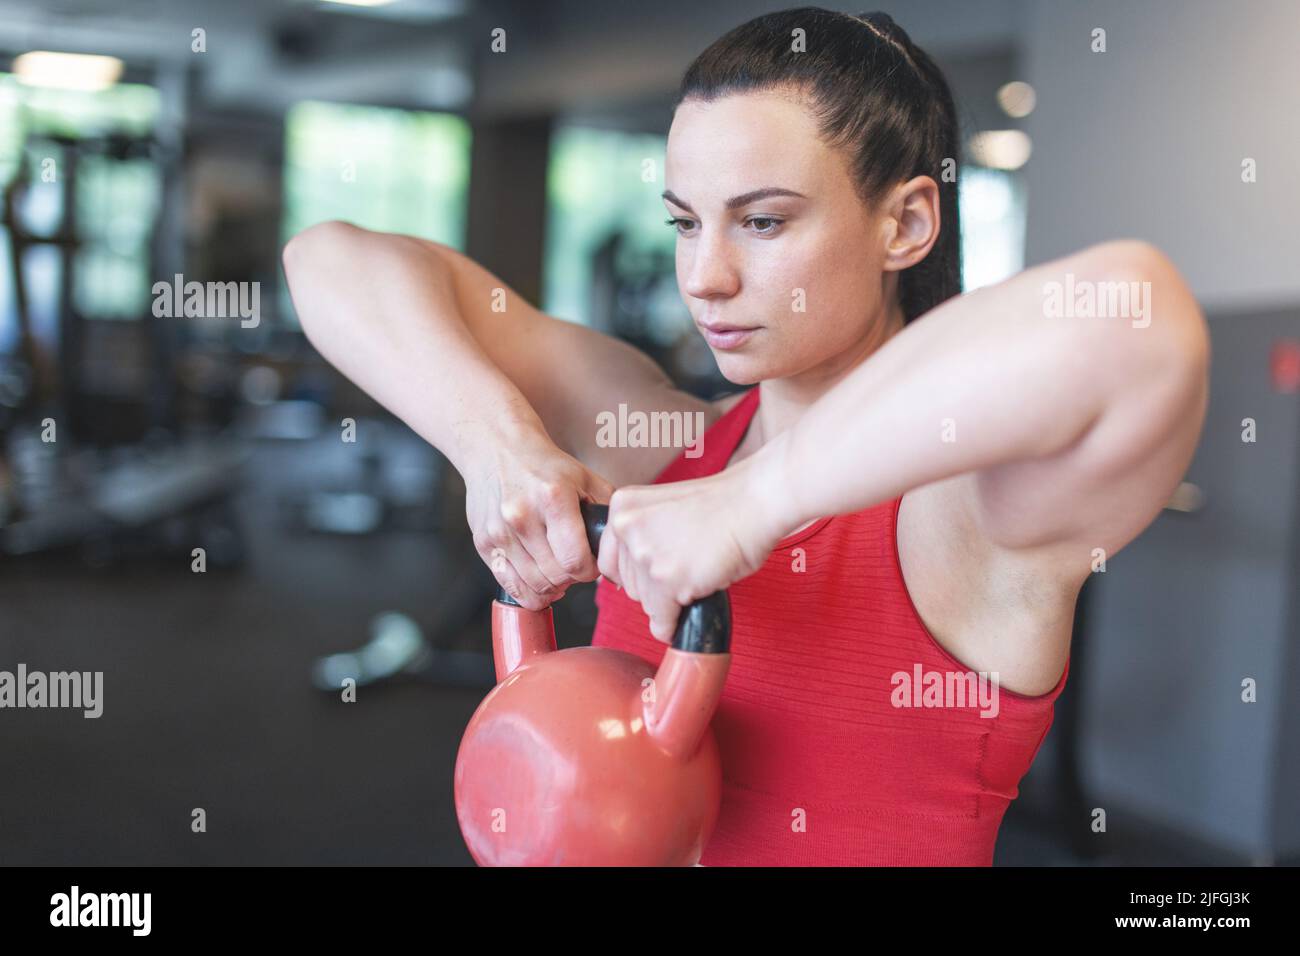 Junge kaukasische Frau, die im Fitnessstudio mit Kettlebell trainiert Stockfoto